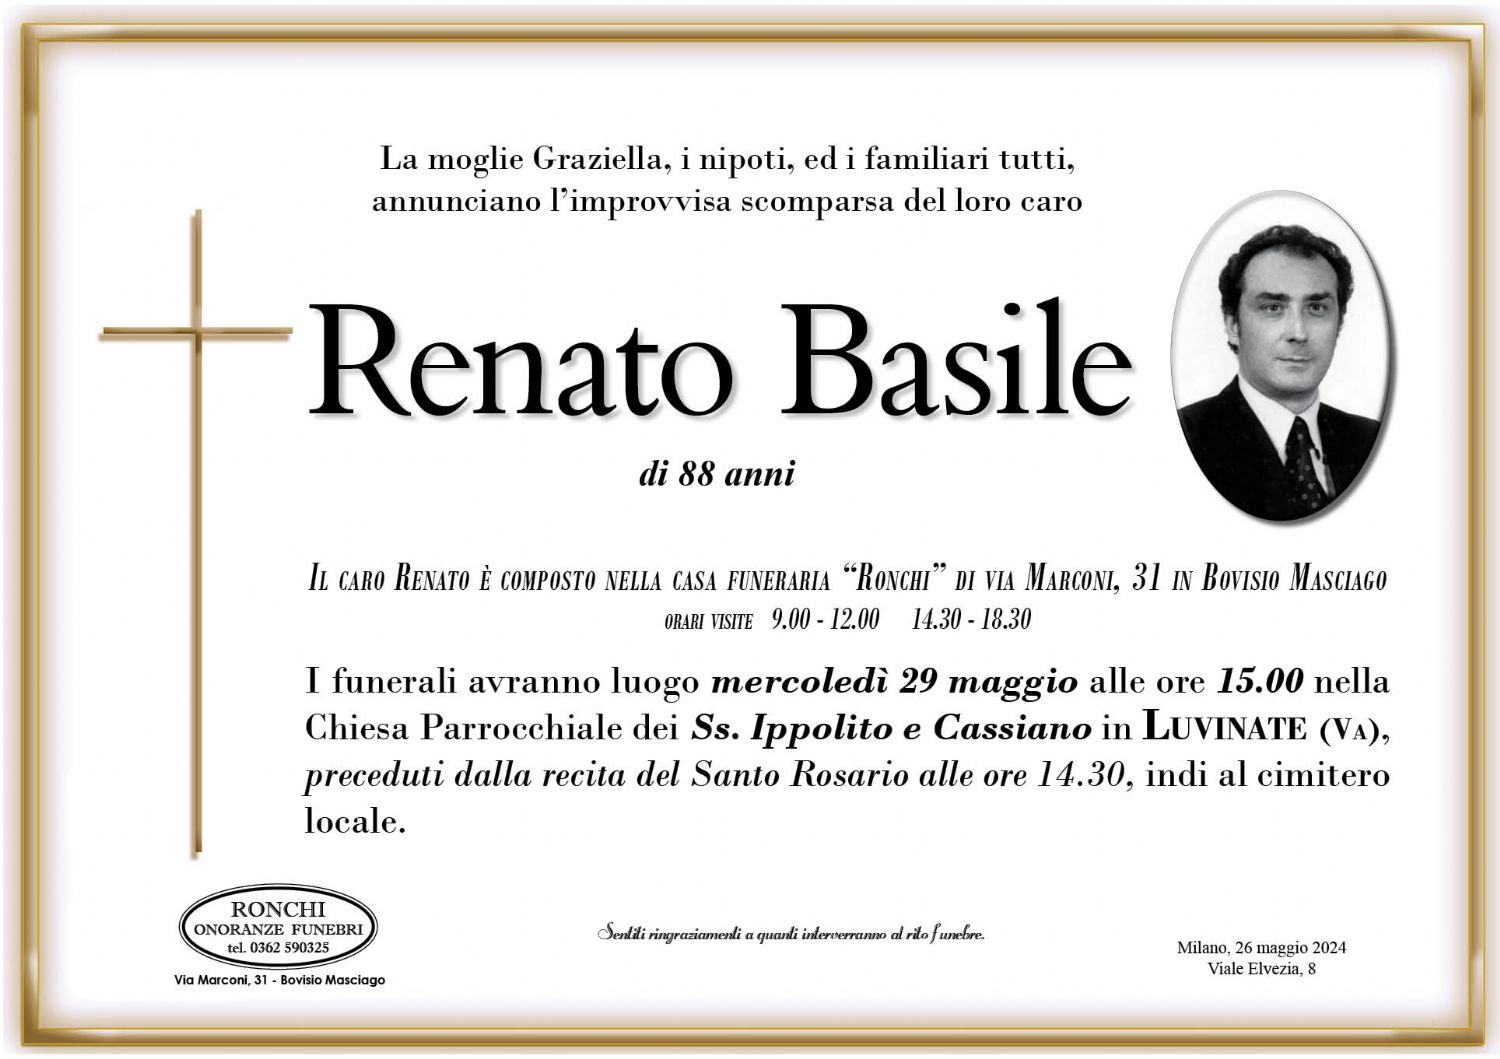 Renato Basile